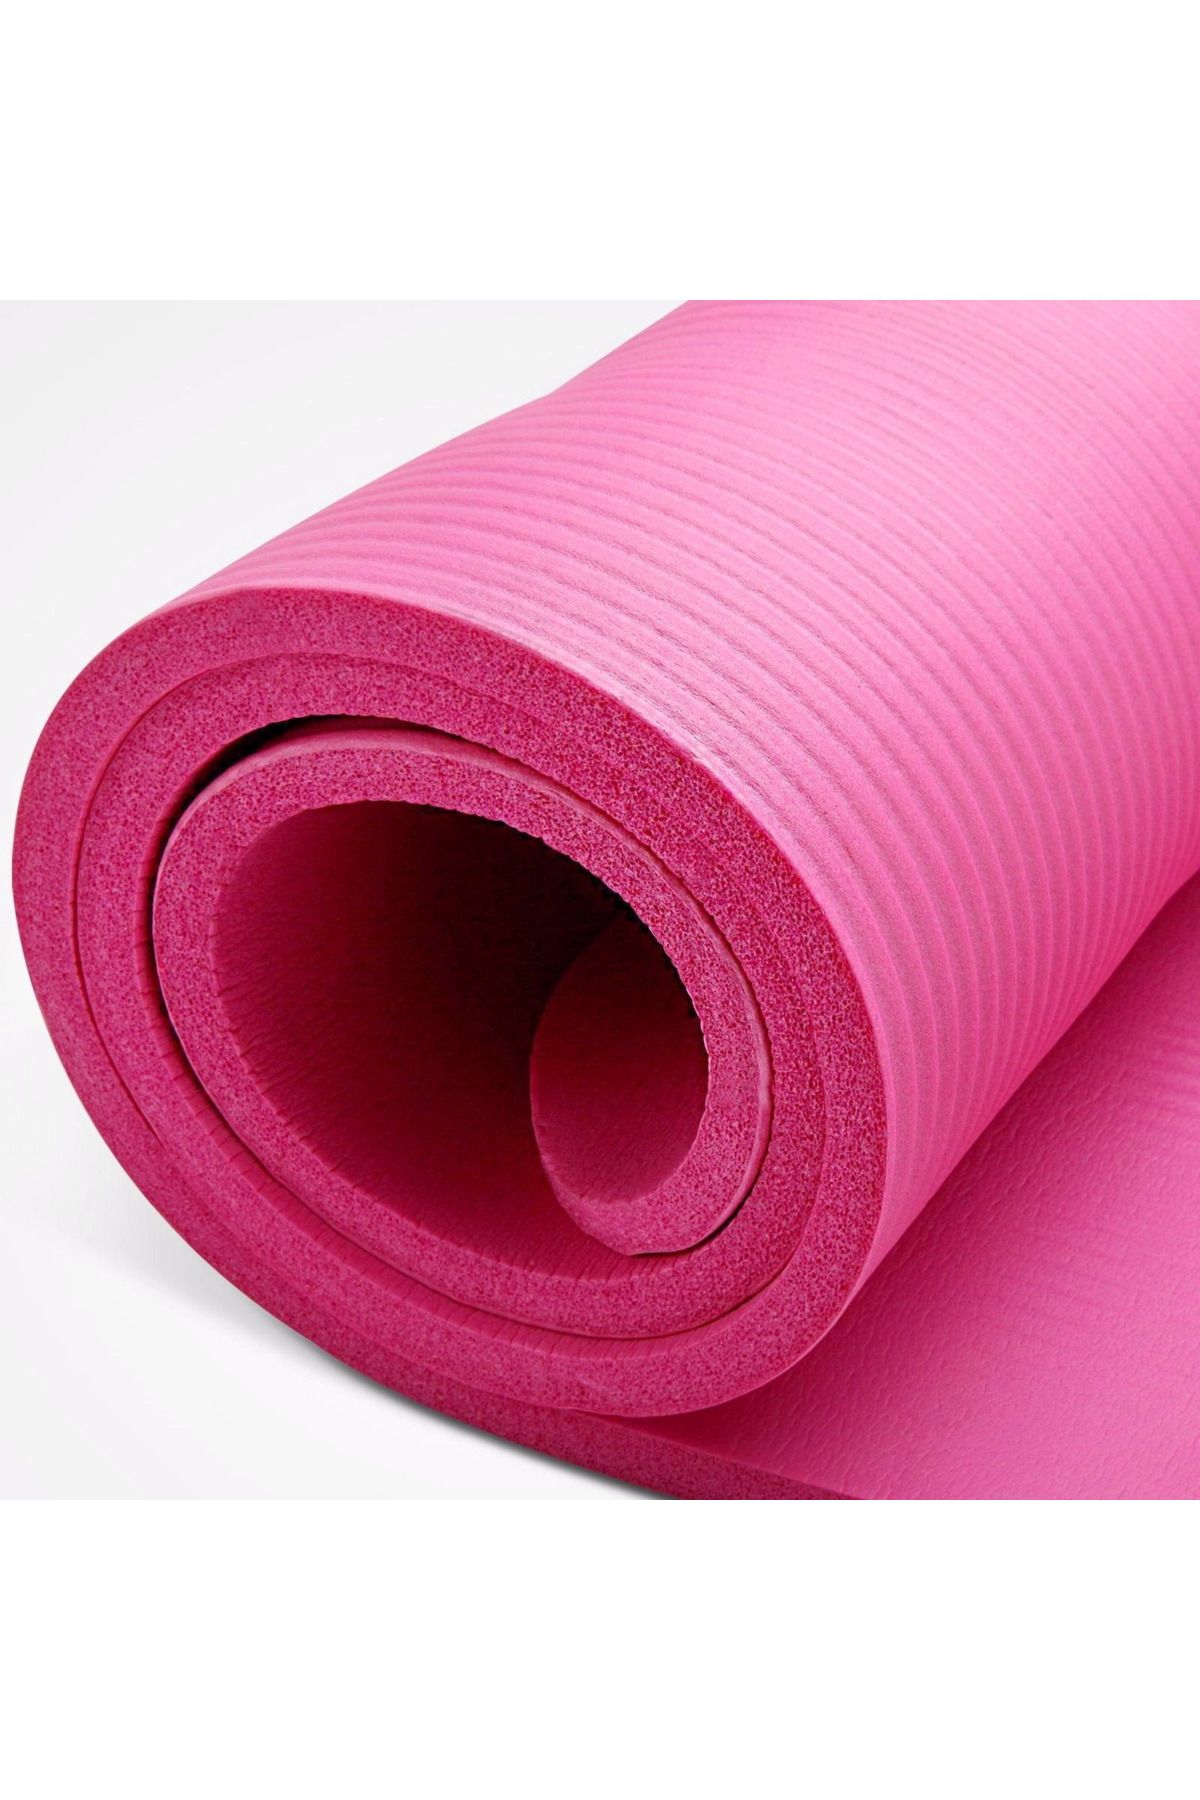 Genel Markalar Lucestkrg Yoga Mat Egzersiz Aerobik Fitness Yoga Halısı Plates Minderi New